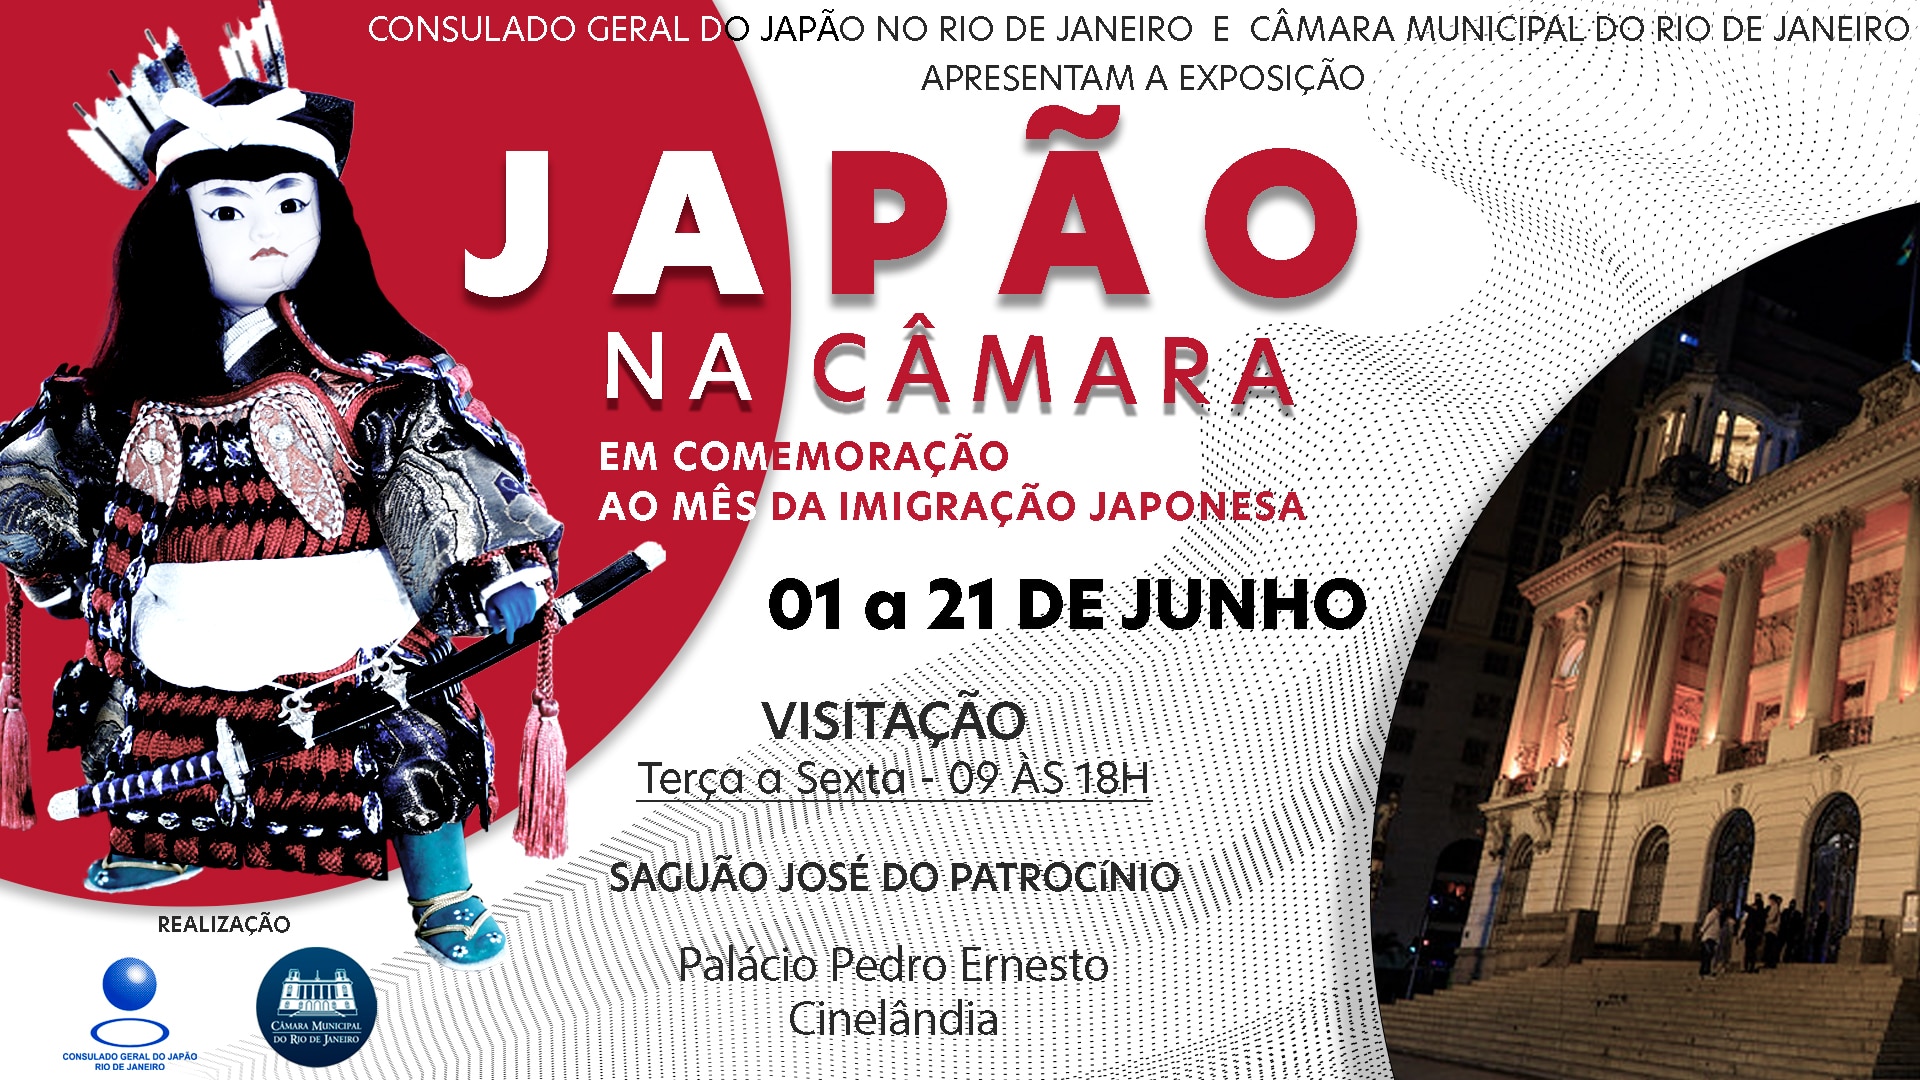 BOKU NO HERO - Consulado Geral do Japão no Rio de Janeiro